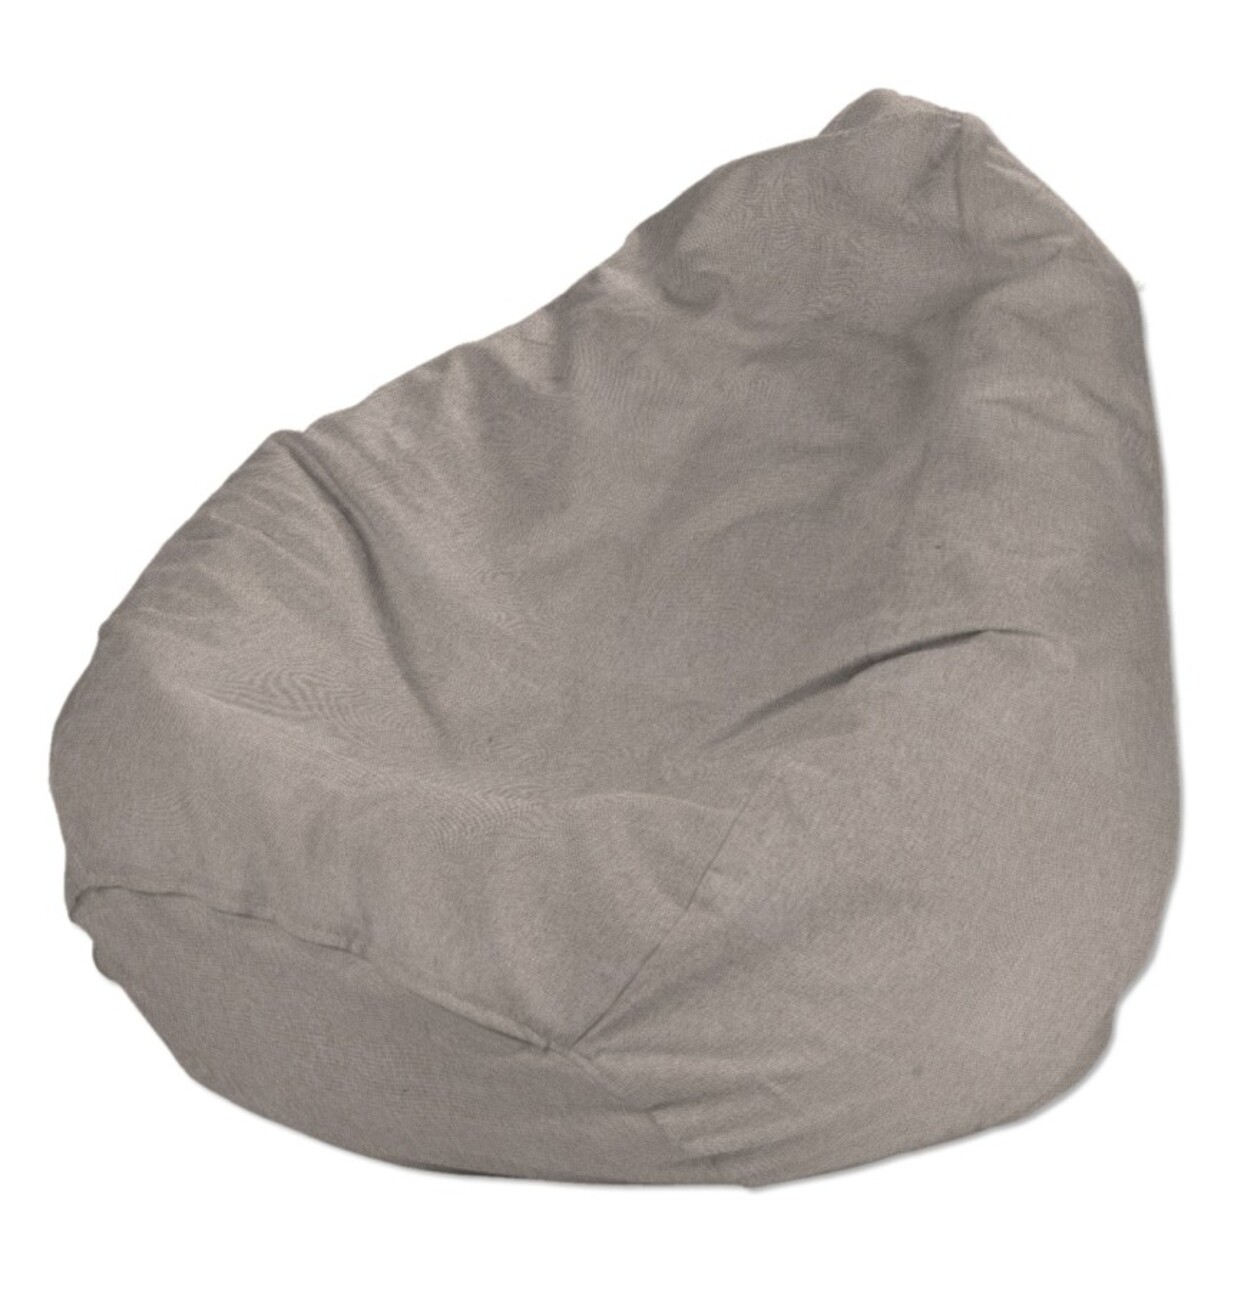 Bezug für Sitzsack, beige-grau, Bezug für Sitzsack Ø50 x 85 cm, Etna (705-0 günstig online kaufen